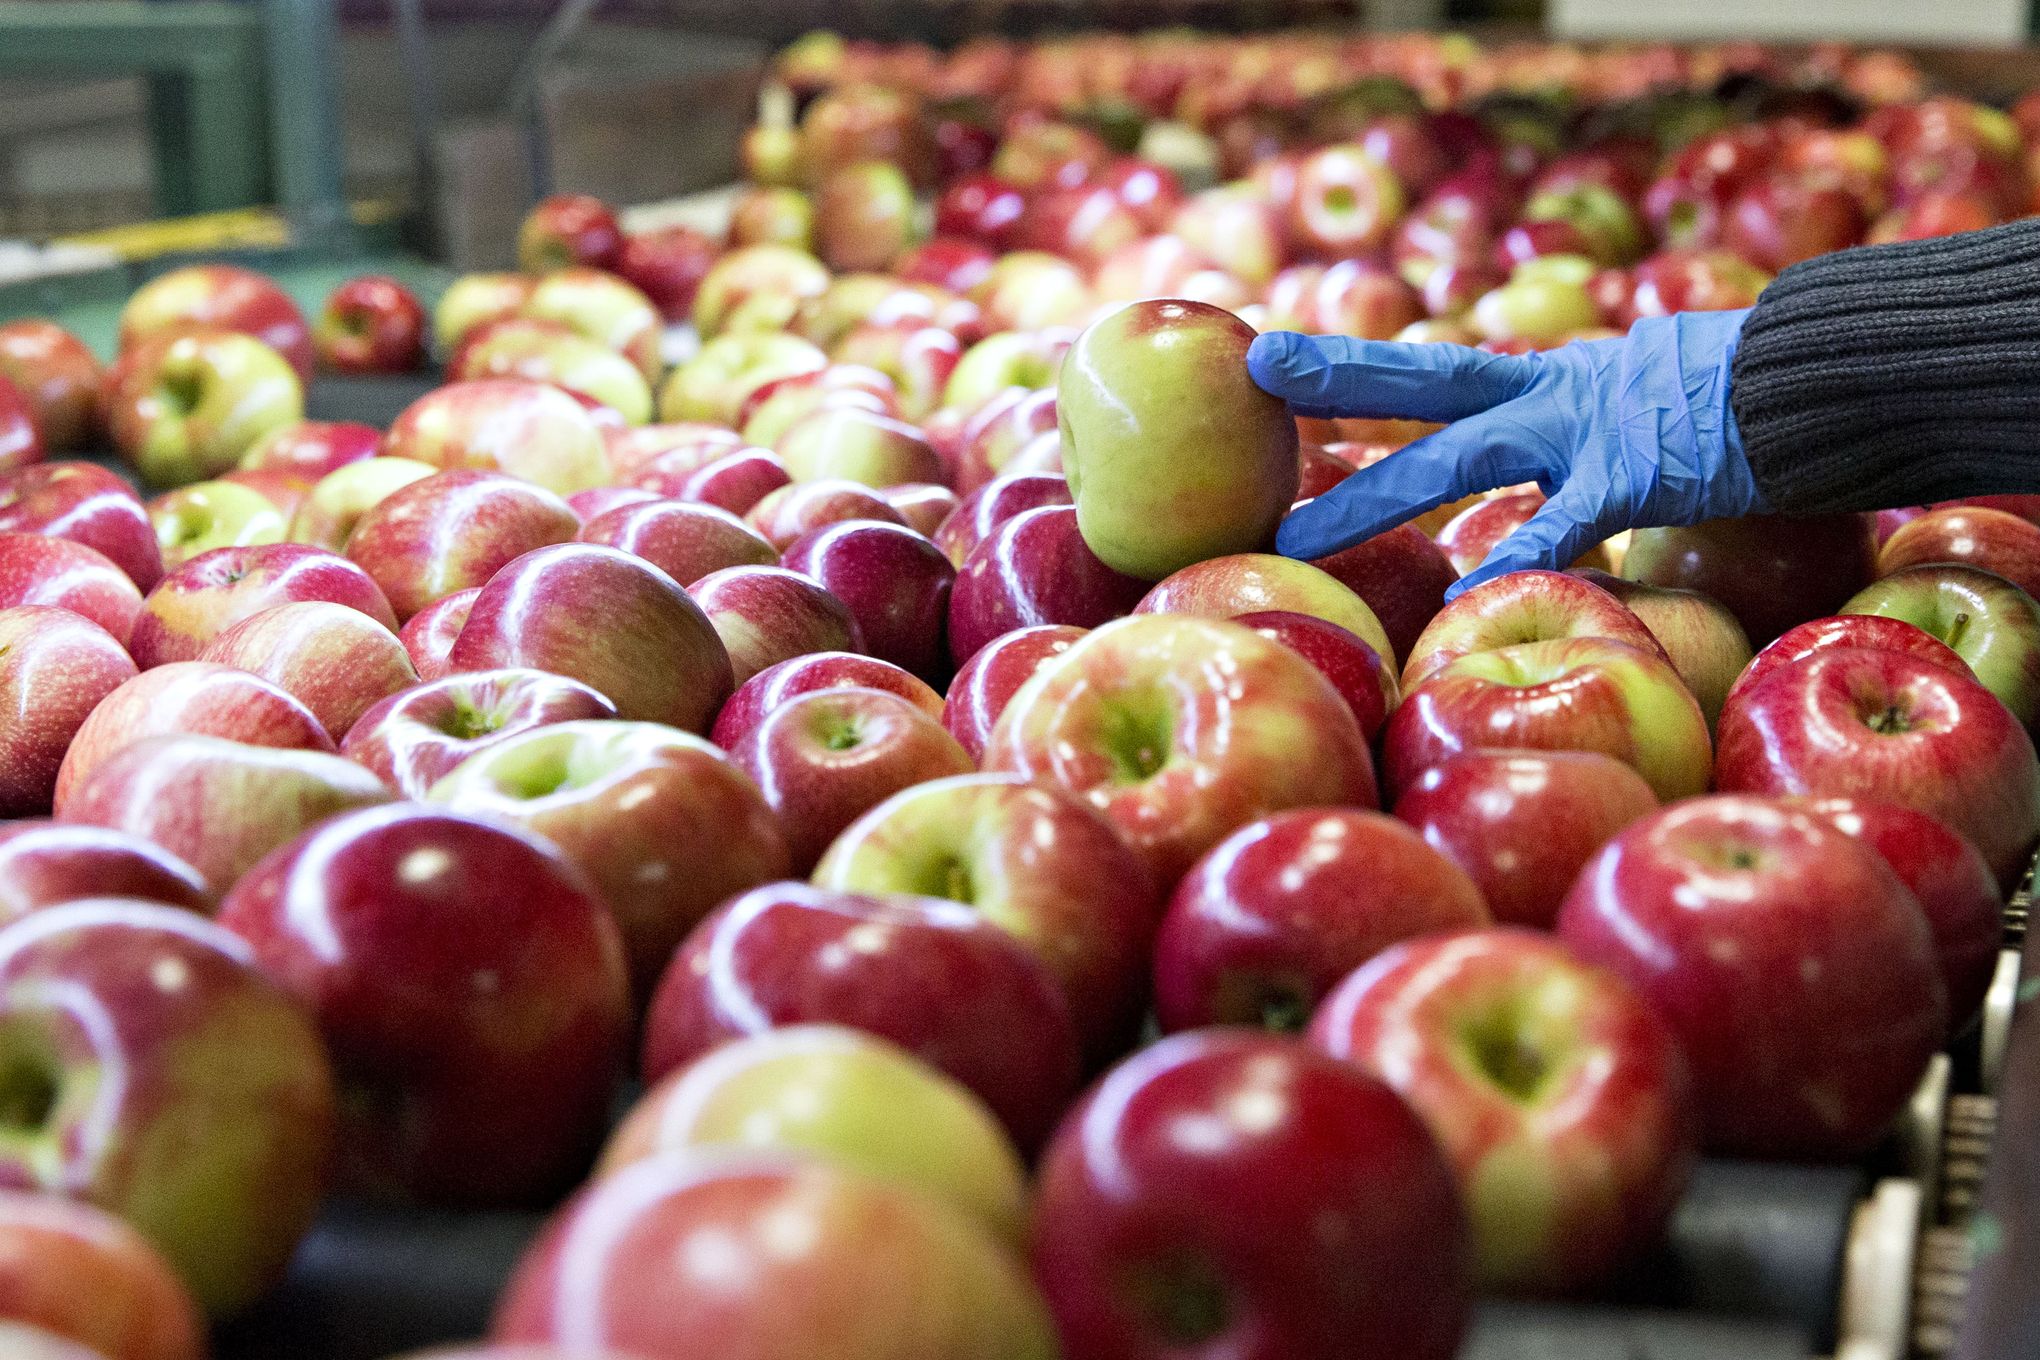 Honeycrisp Apples at Whole Foods Market